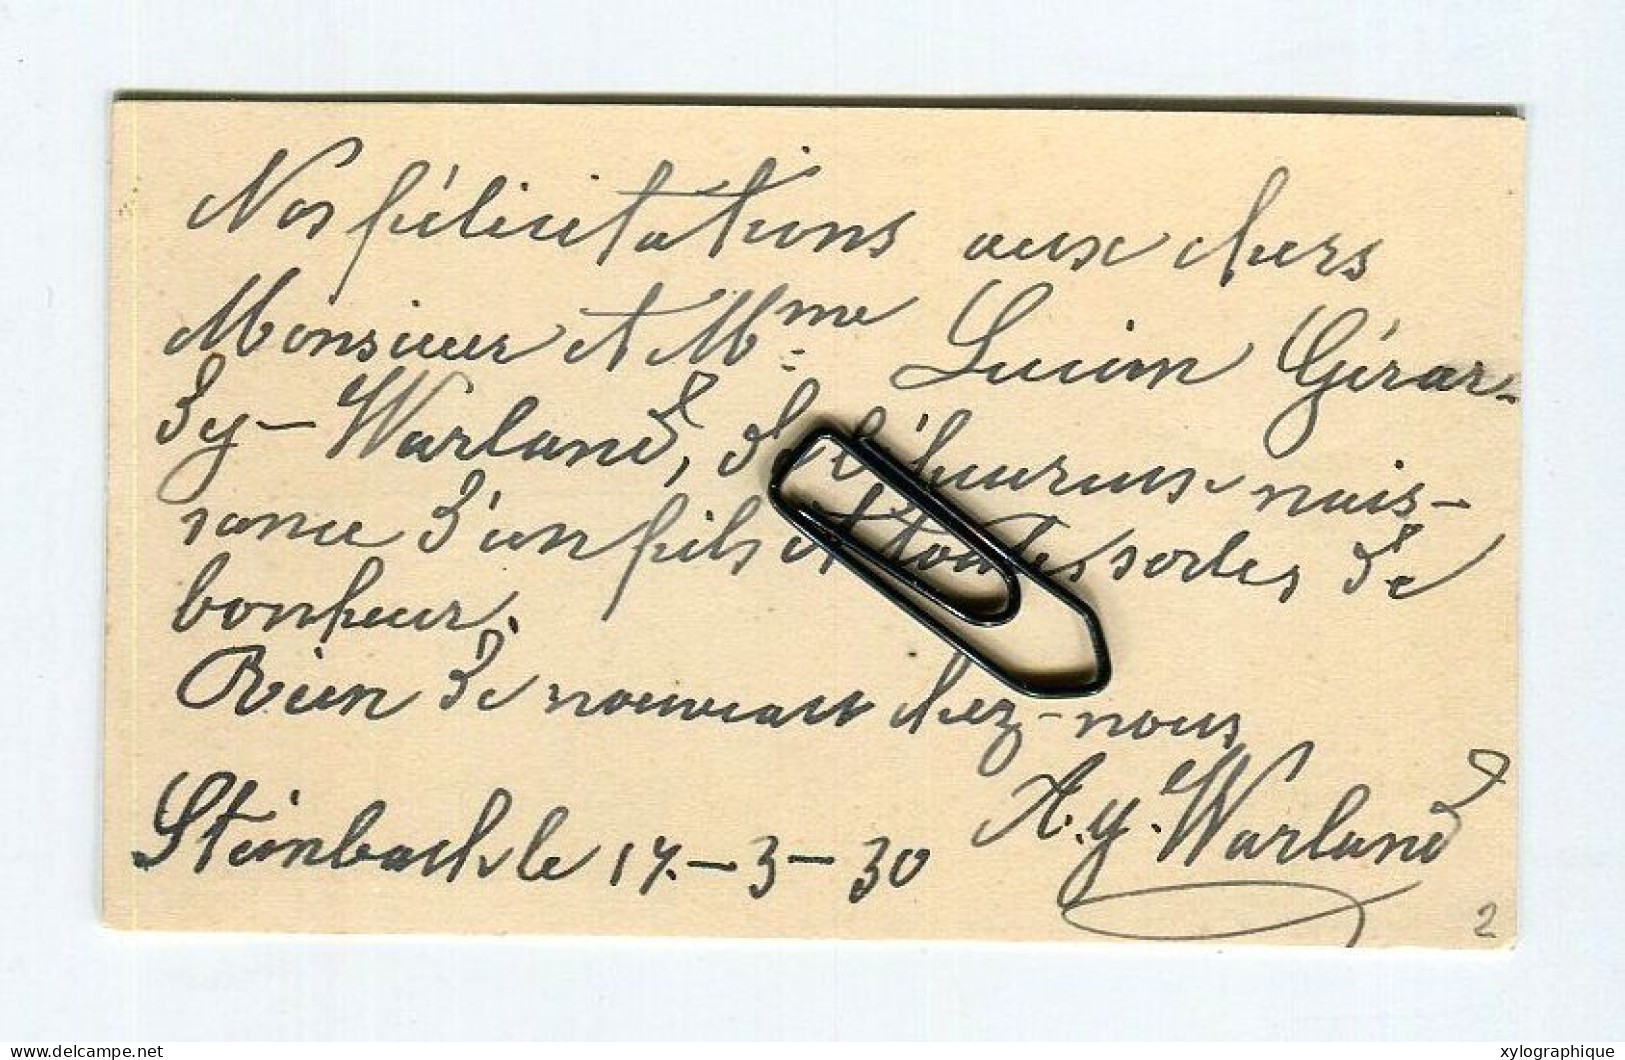 STEINBACH (Gouvy Limerlé) - Carte De Visite 1930, Voir Verso, Warland Meinguet, Pour Famille Gérardy Warland - Cartoncini Da Visita